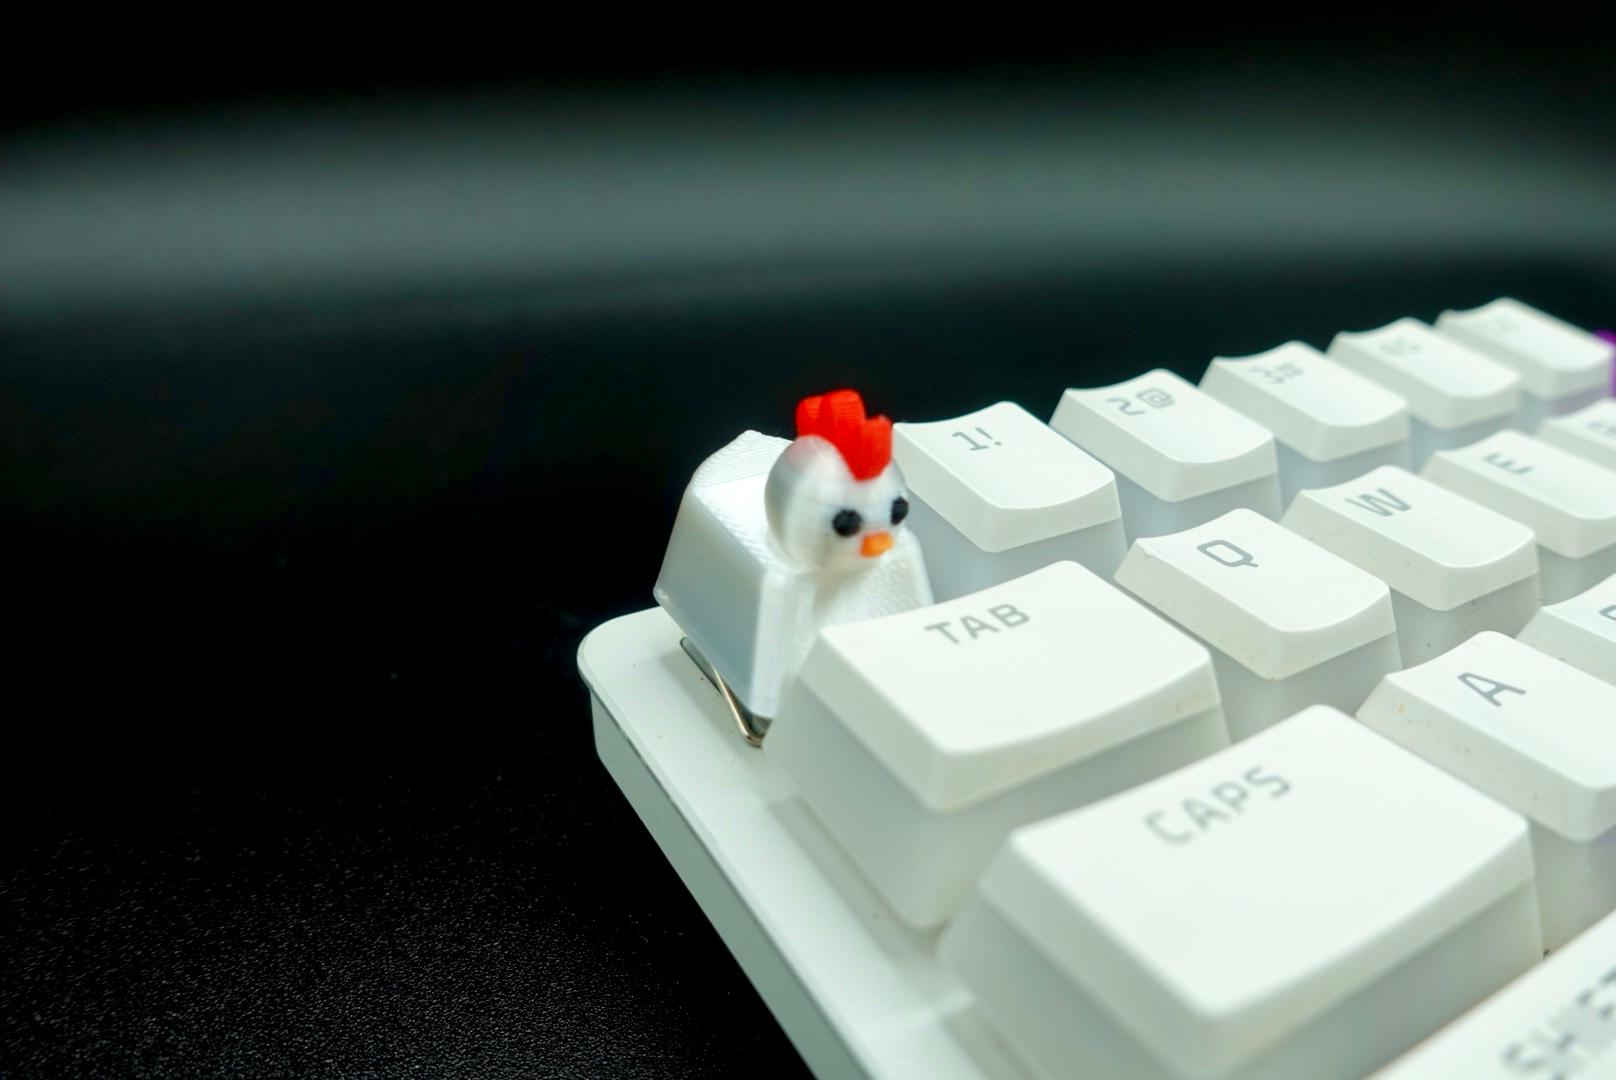 Chicken Keycap (Mechanical Keyboard) 3d model